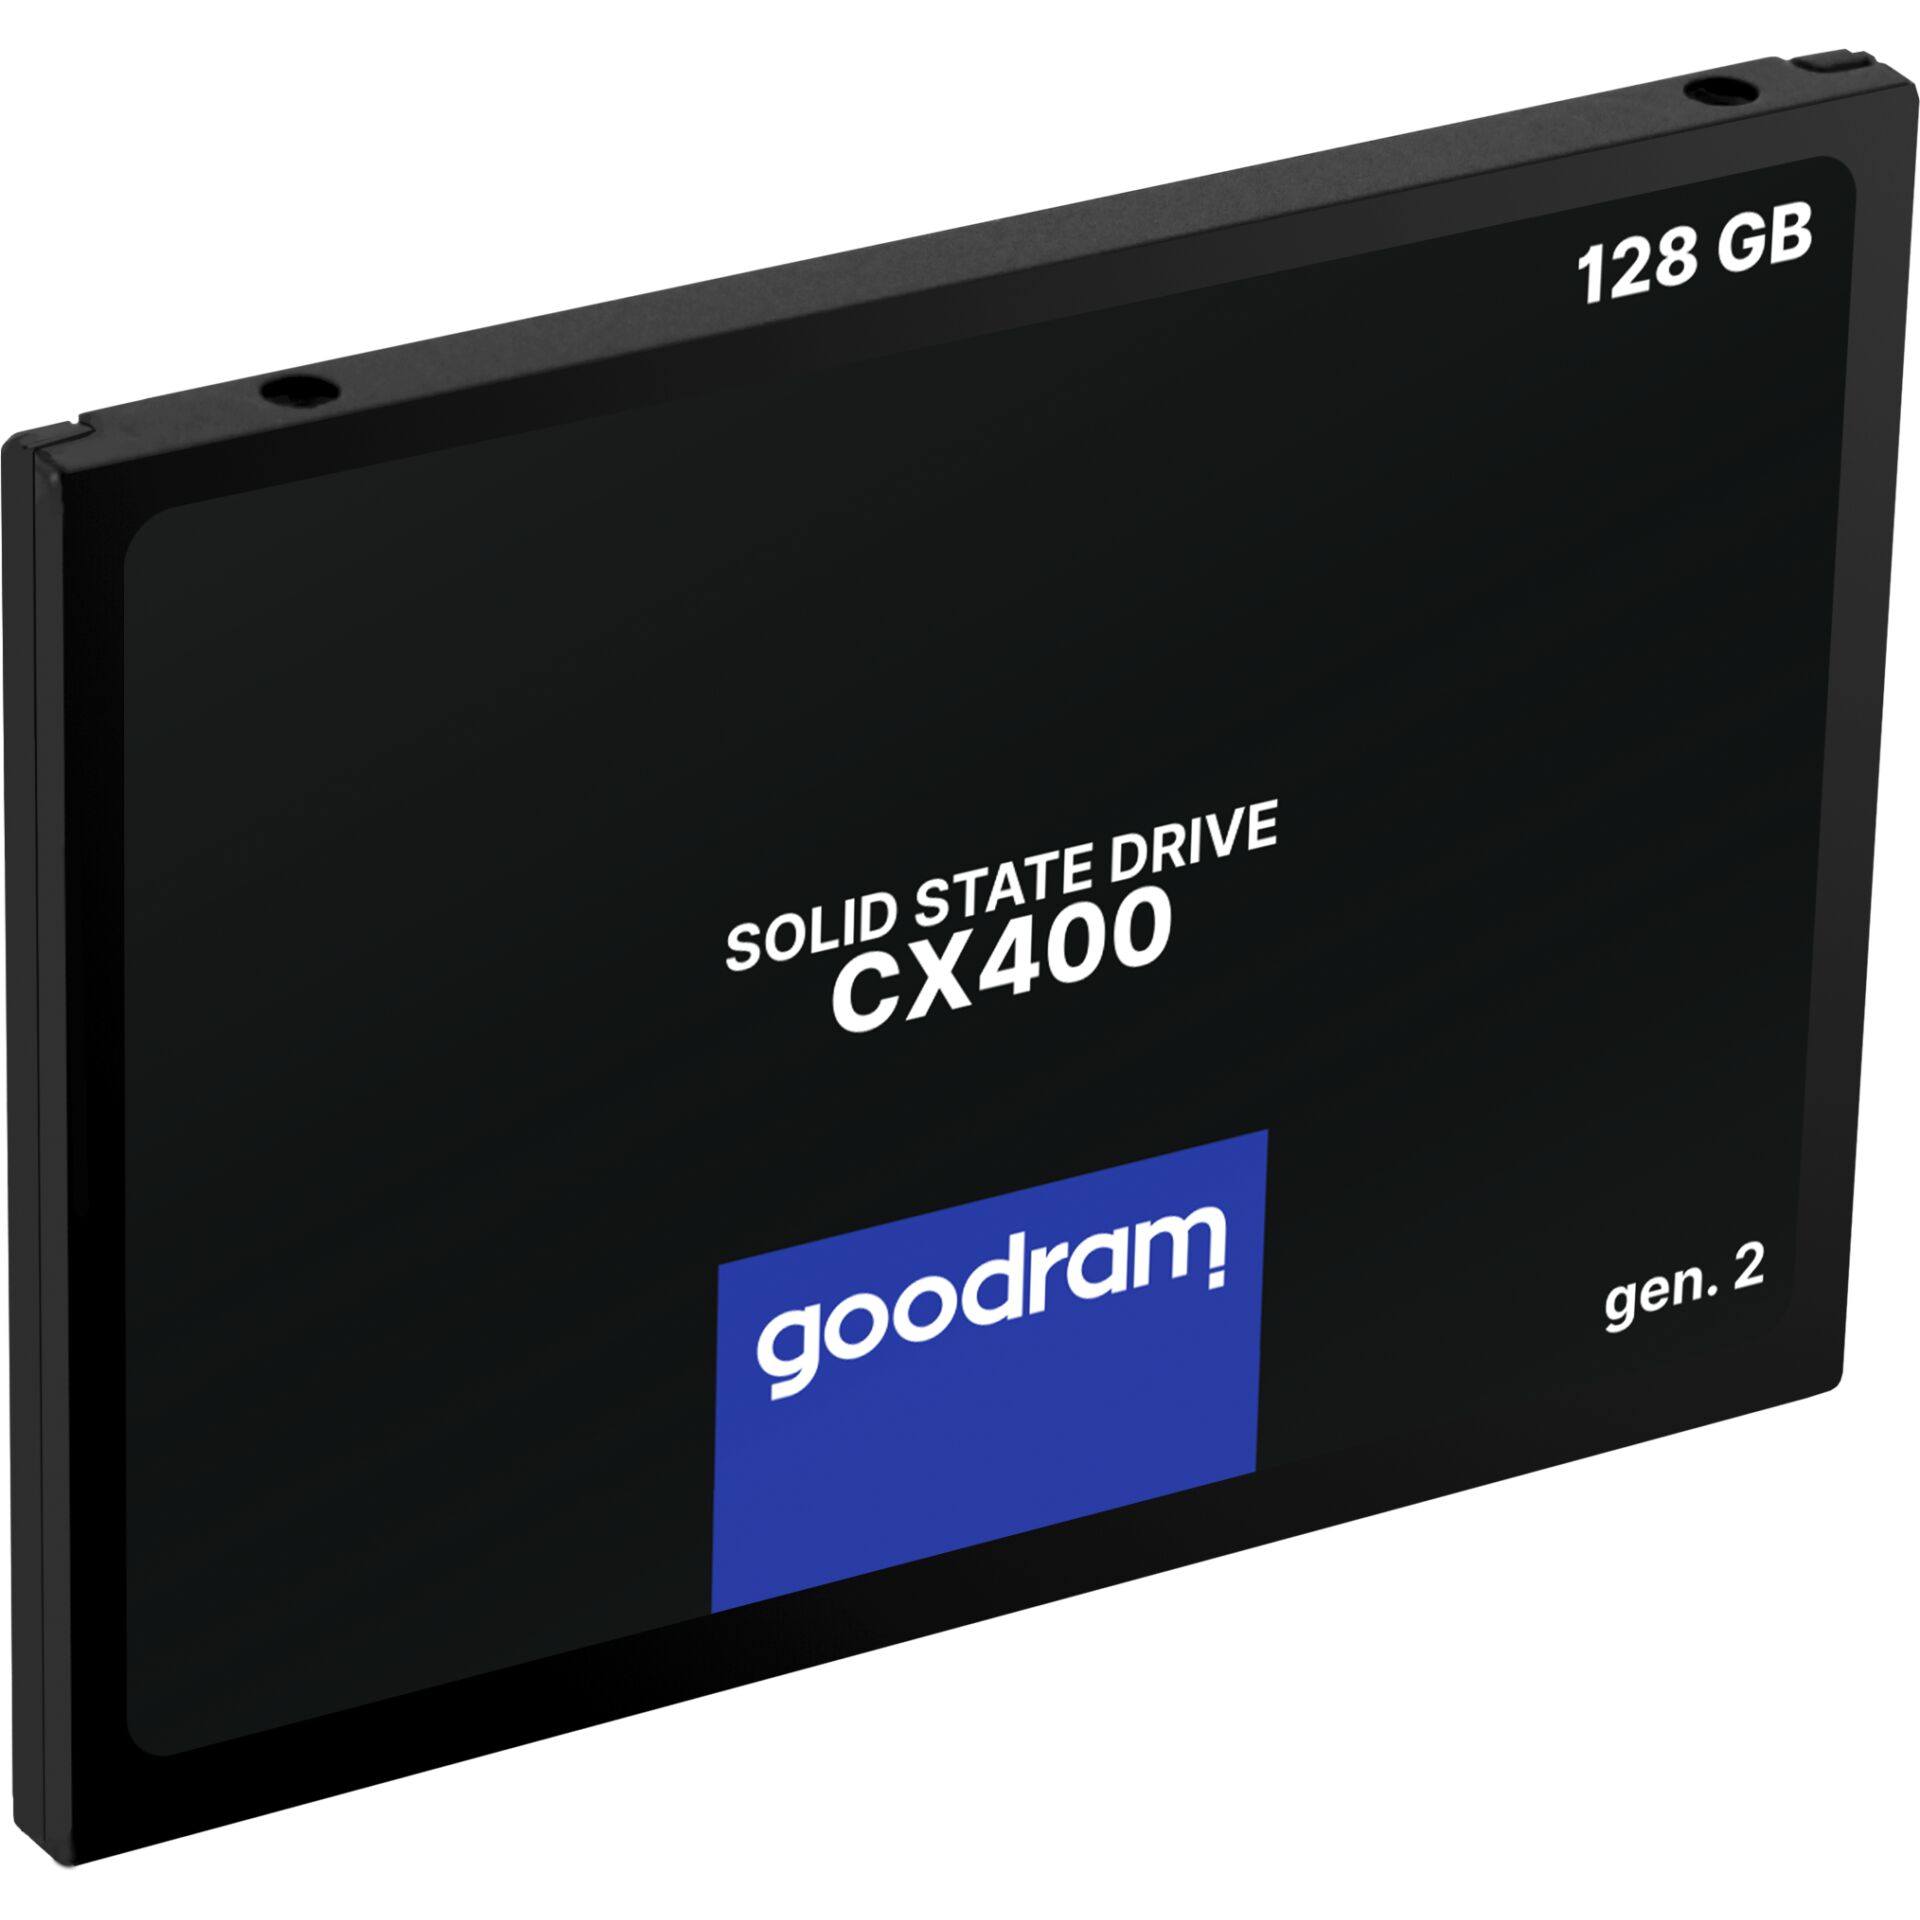 128 GB SSD Goodram CX400 Gen.2, SATA 6Gb/s, lesen: 550MB/s, schreiben: 460MB/s